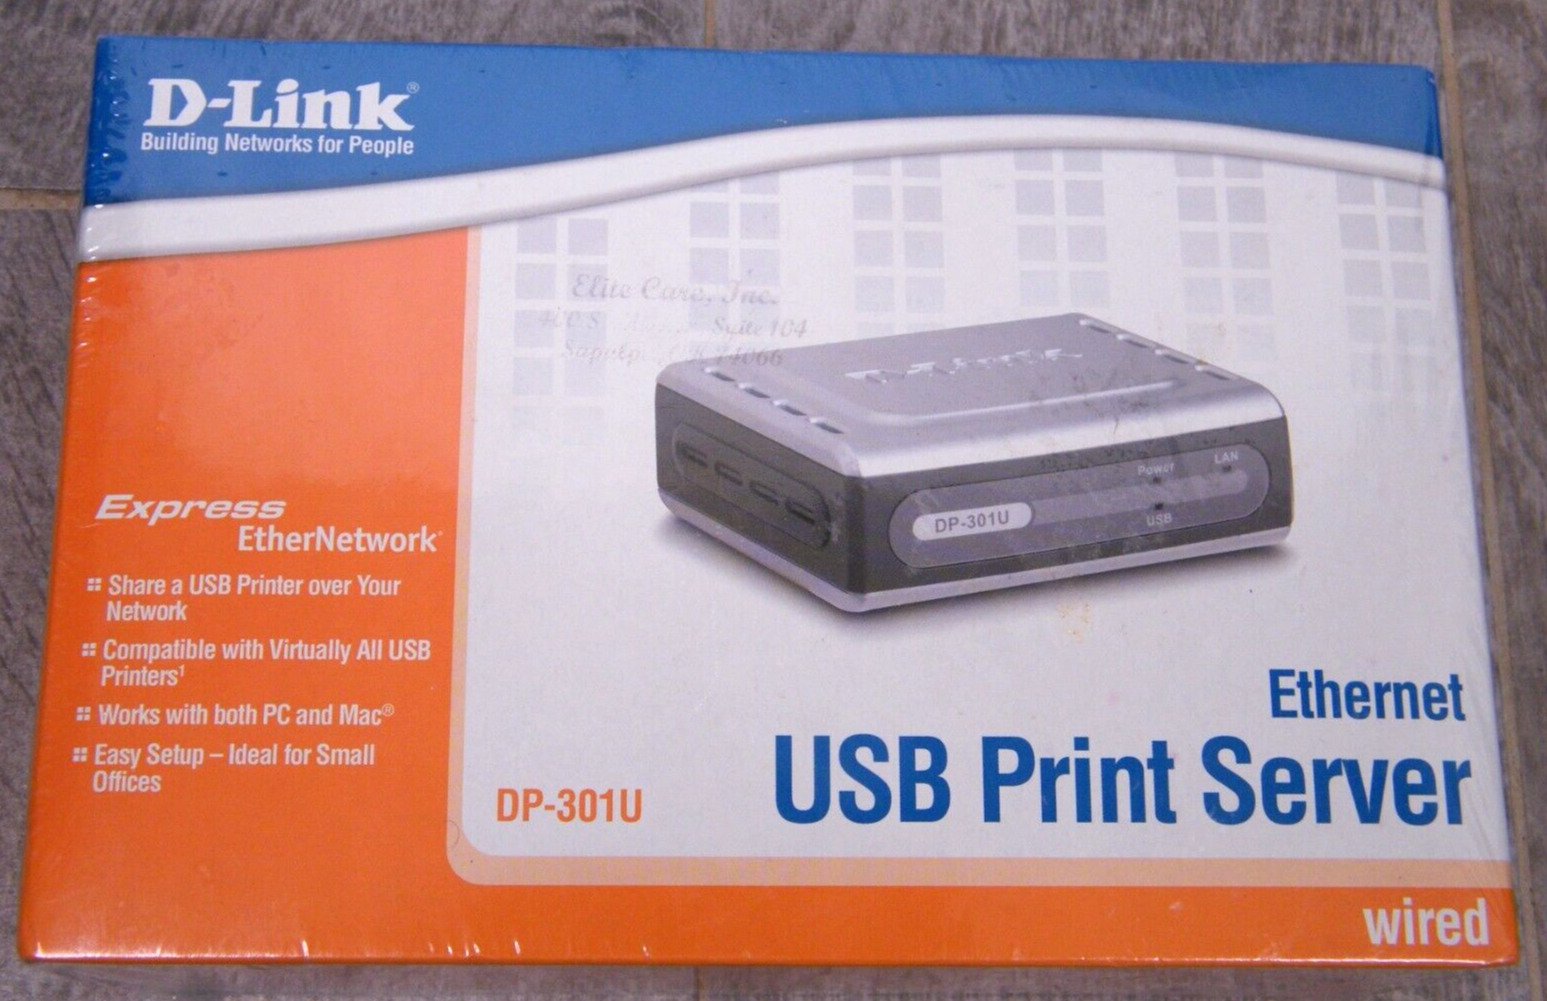 D-Link DP-301U Fast Ethernet USB Print Server Wired - New Sealed